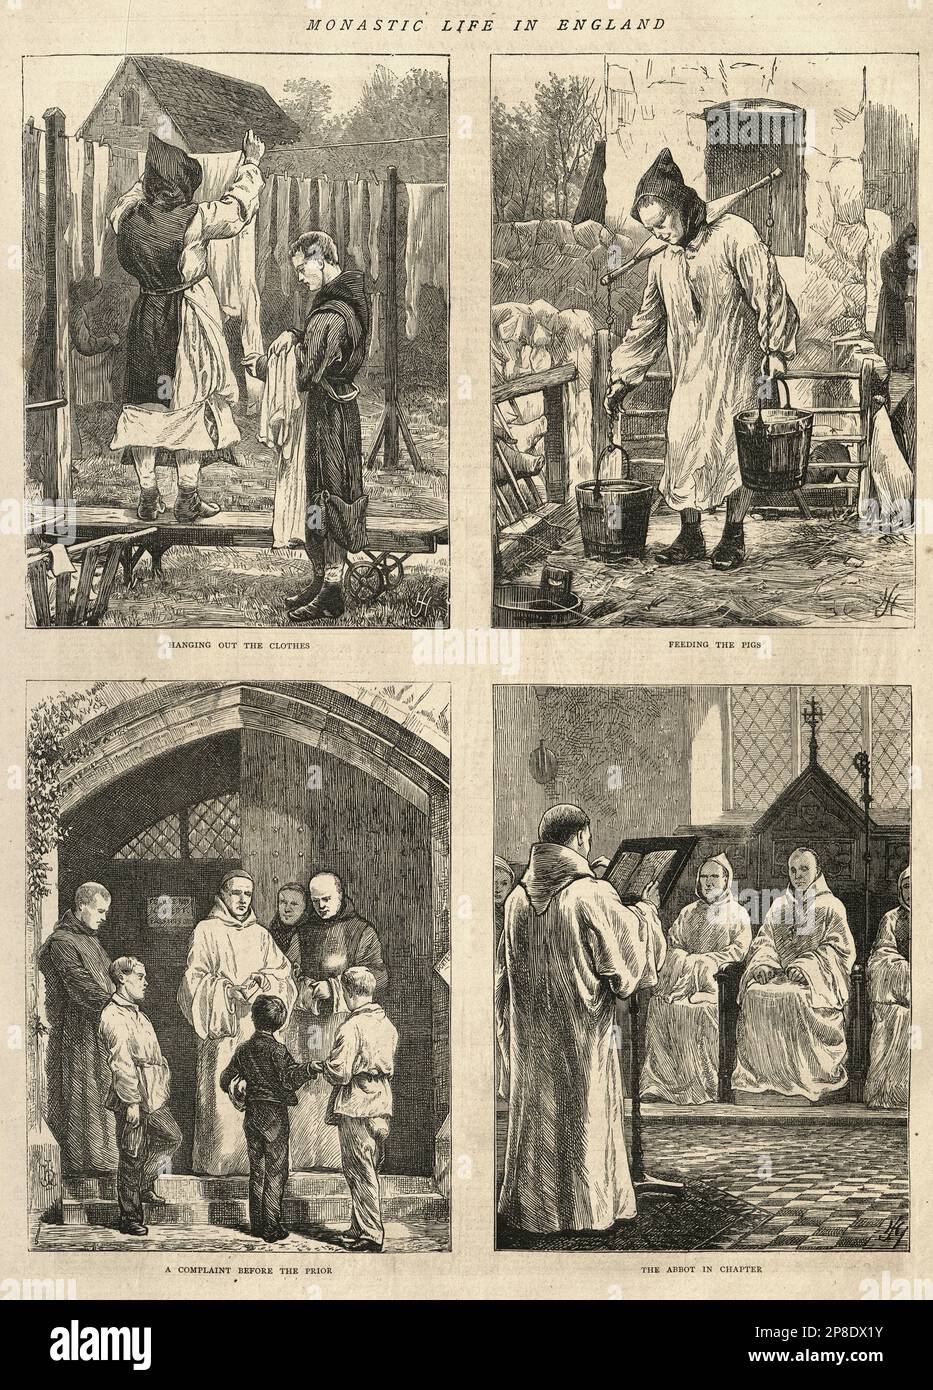 Escenas de la vida monástica en Inglaterra, monjes, 1870s, victoriano siglo 19th Foto de stock